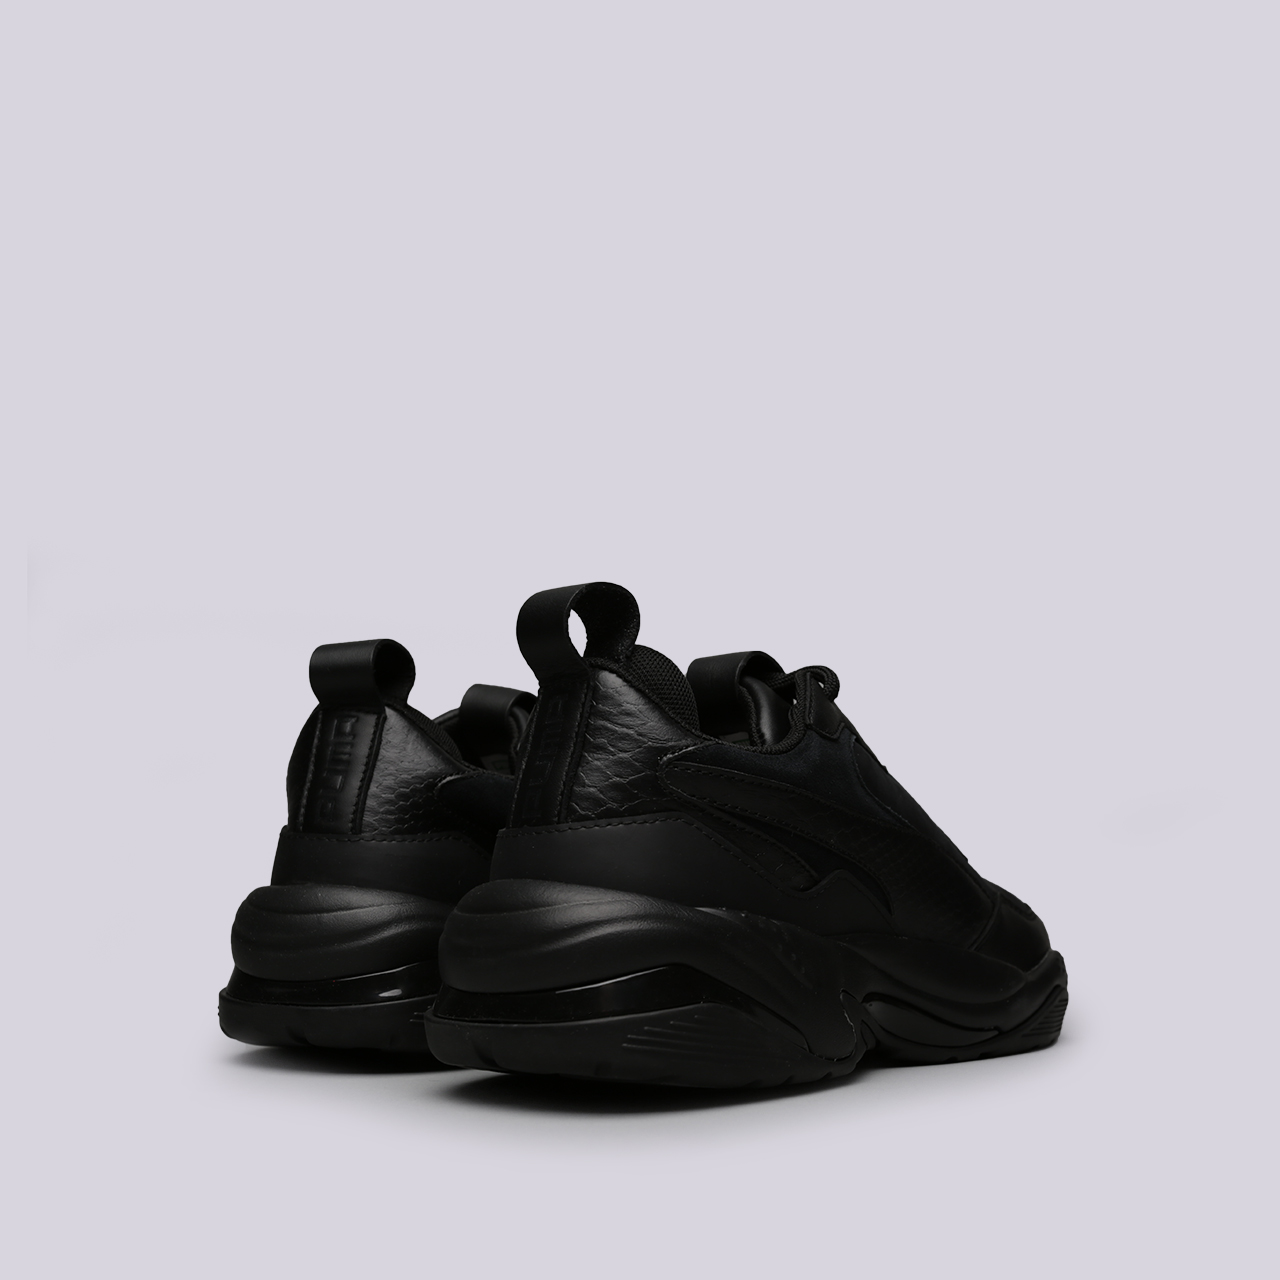 мужские черные кроссовки PUMA Thunder Desert 36799704 - цена, описание, фото 4